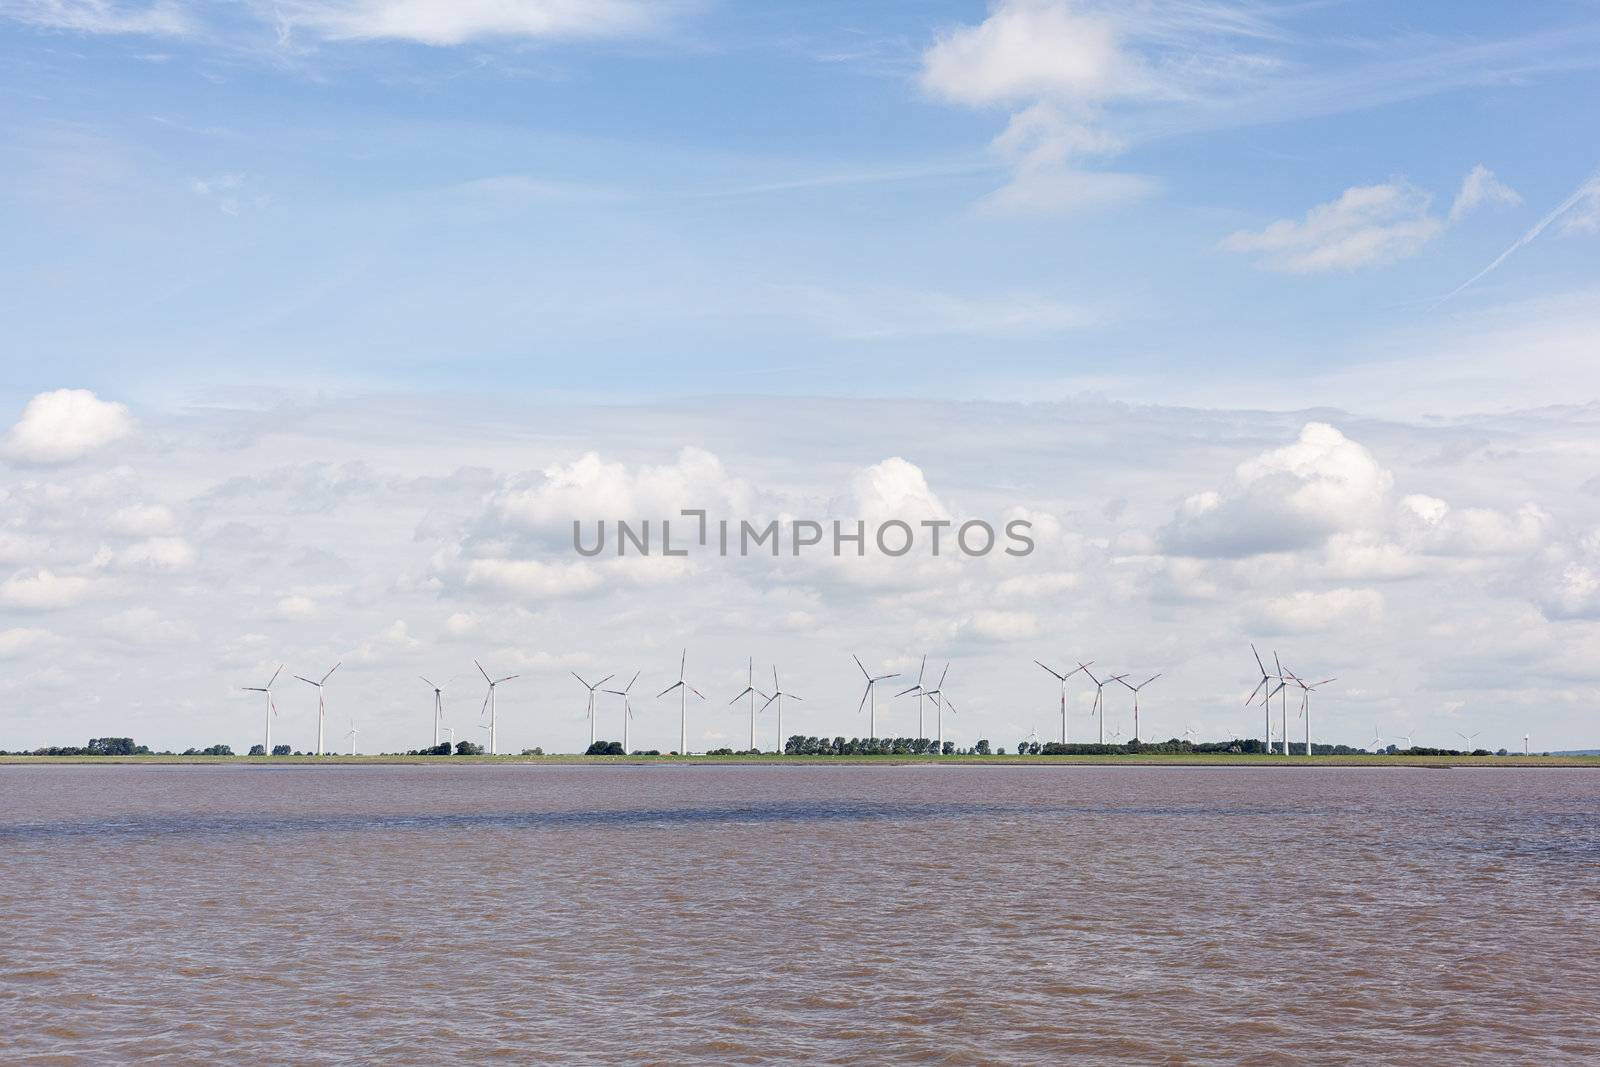 Wind turbines near river